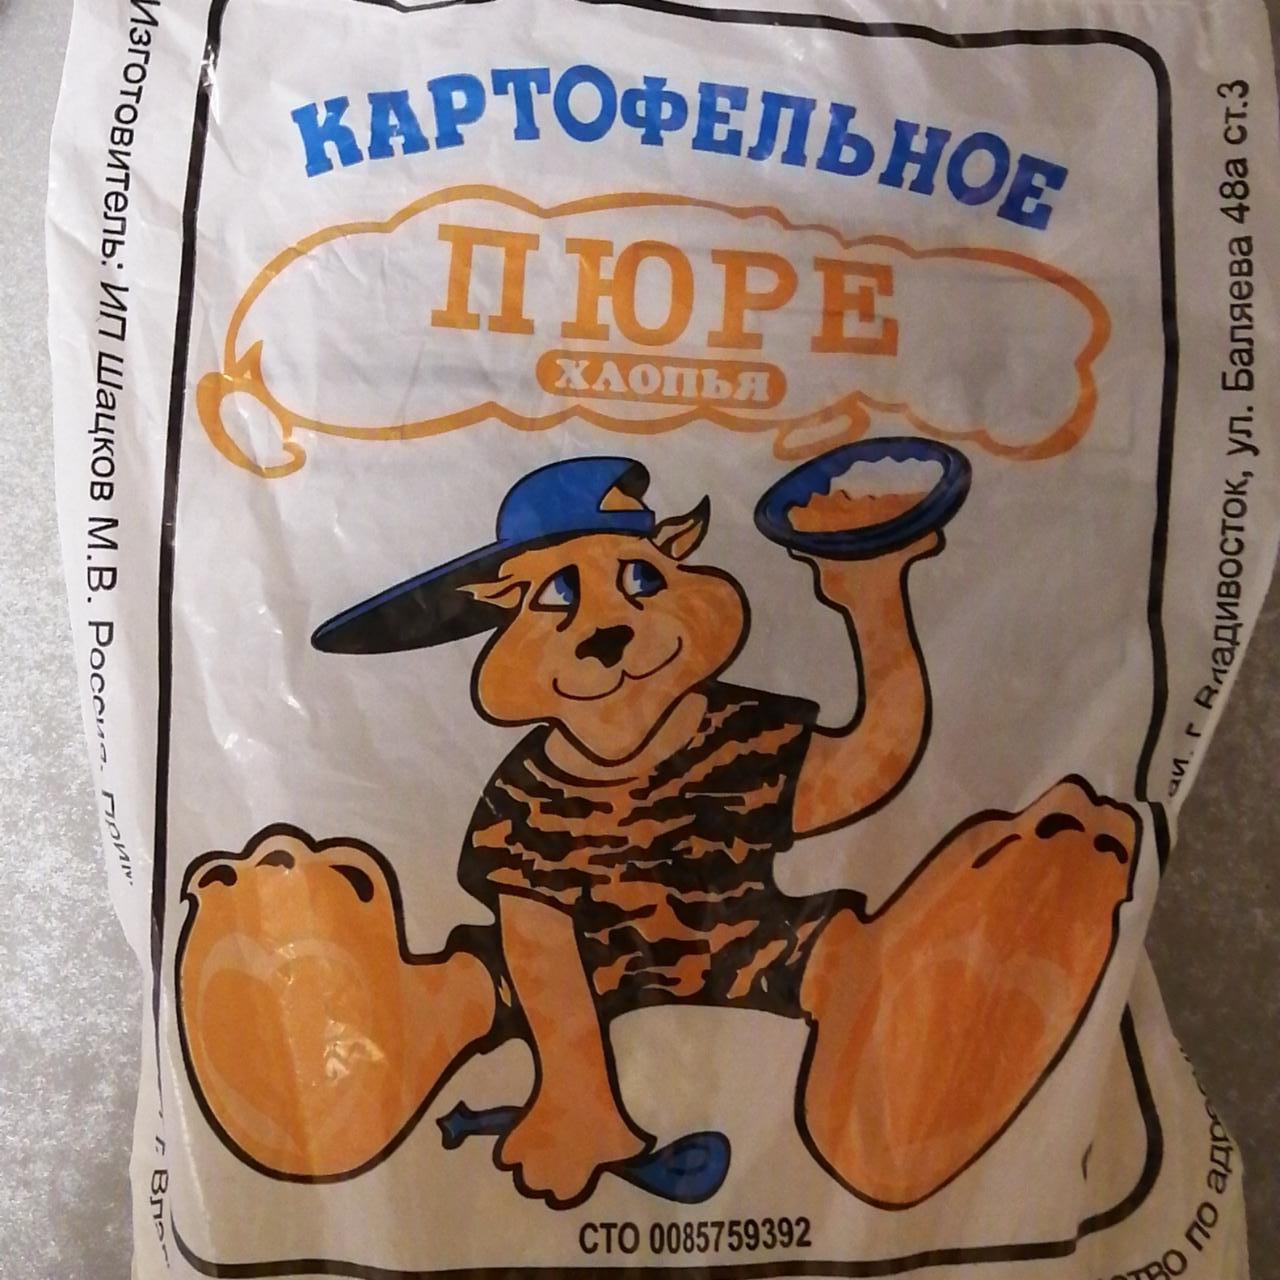 Фото - Картофельное пюре (хлопья) Владивосток